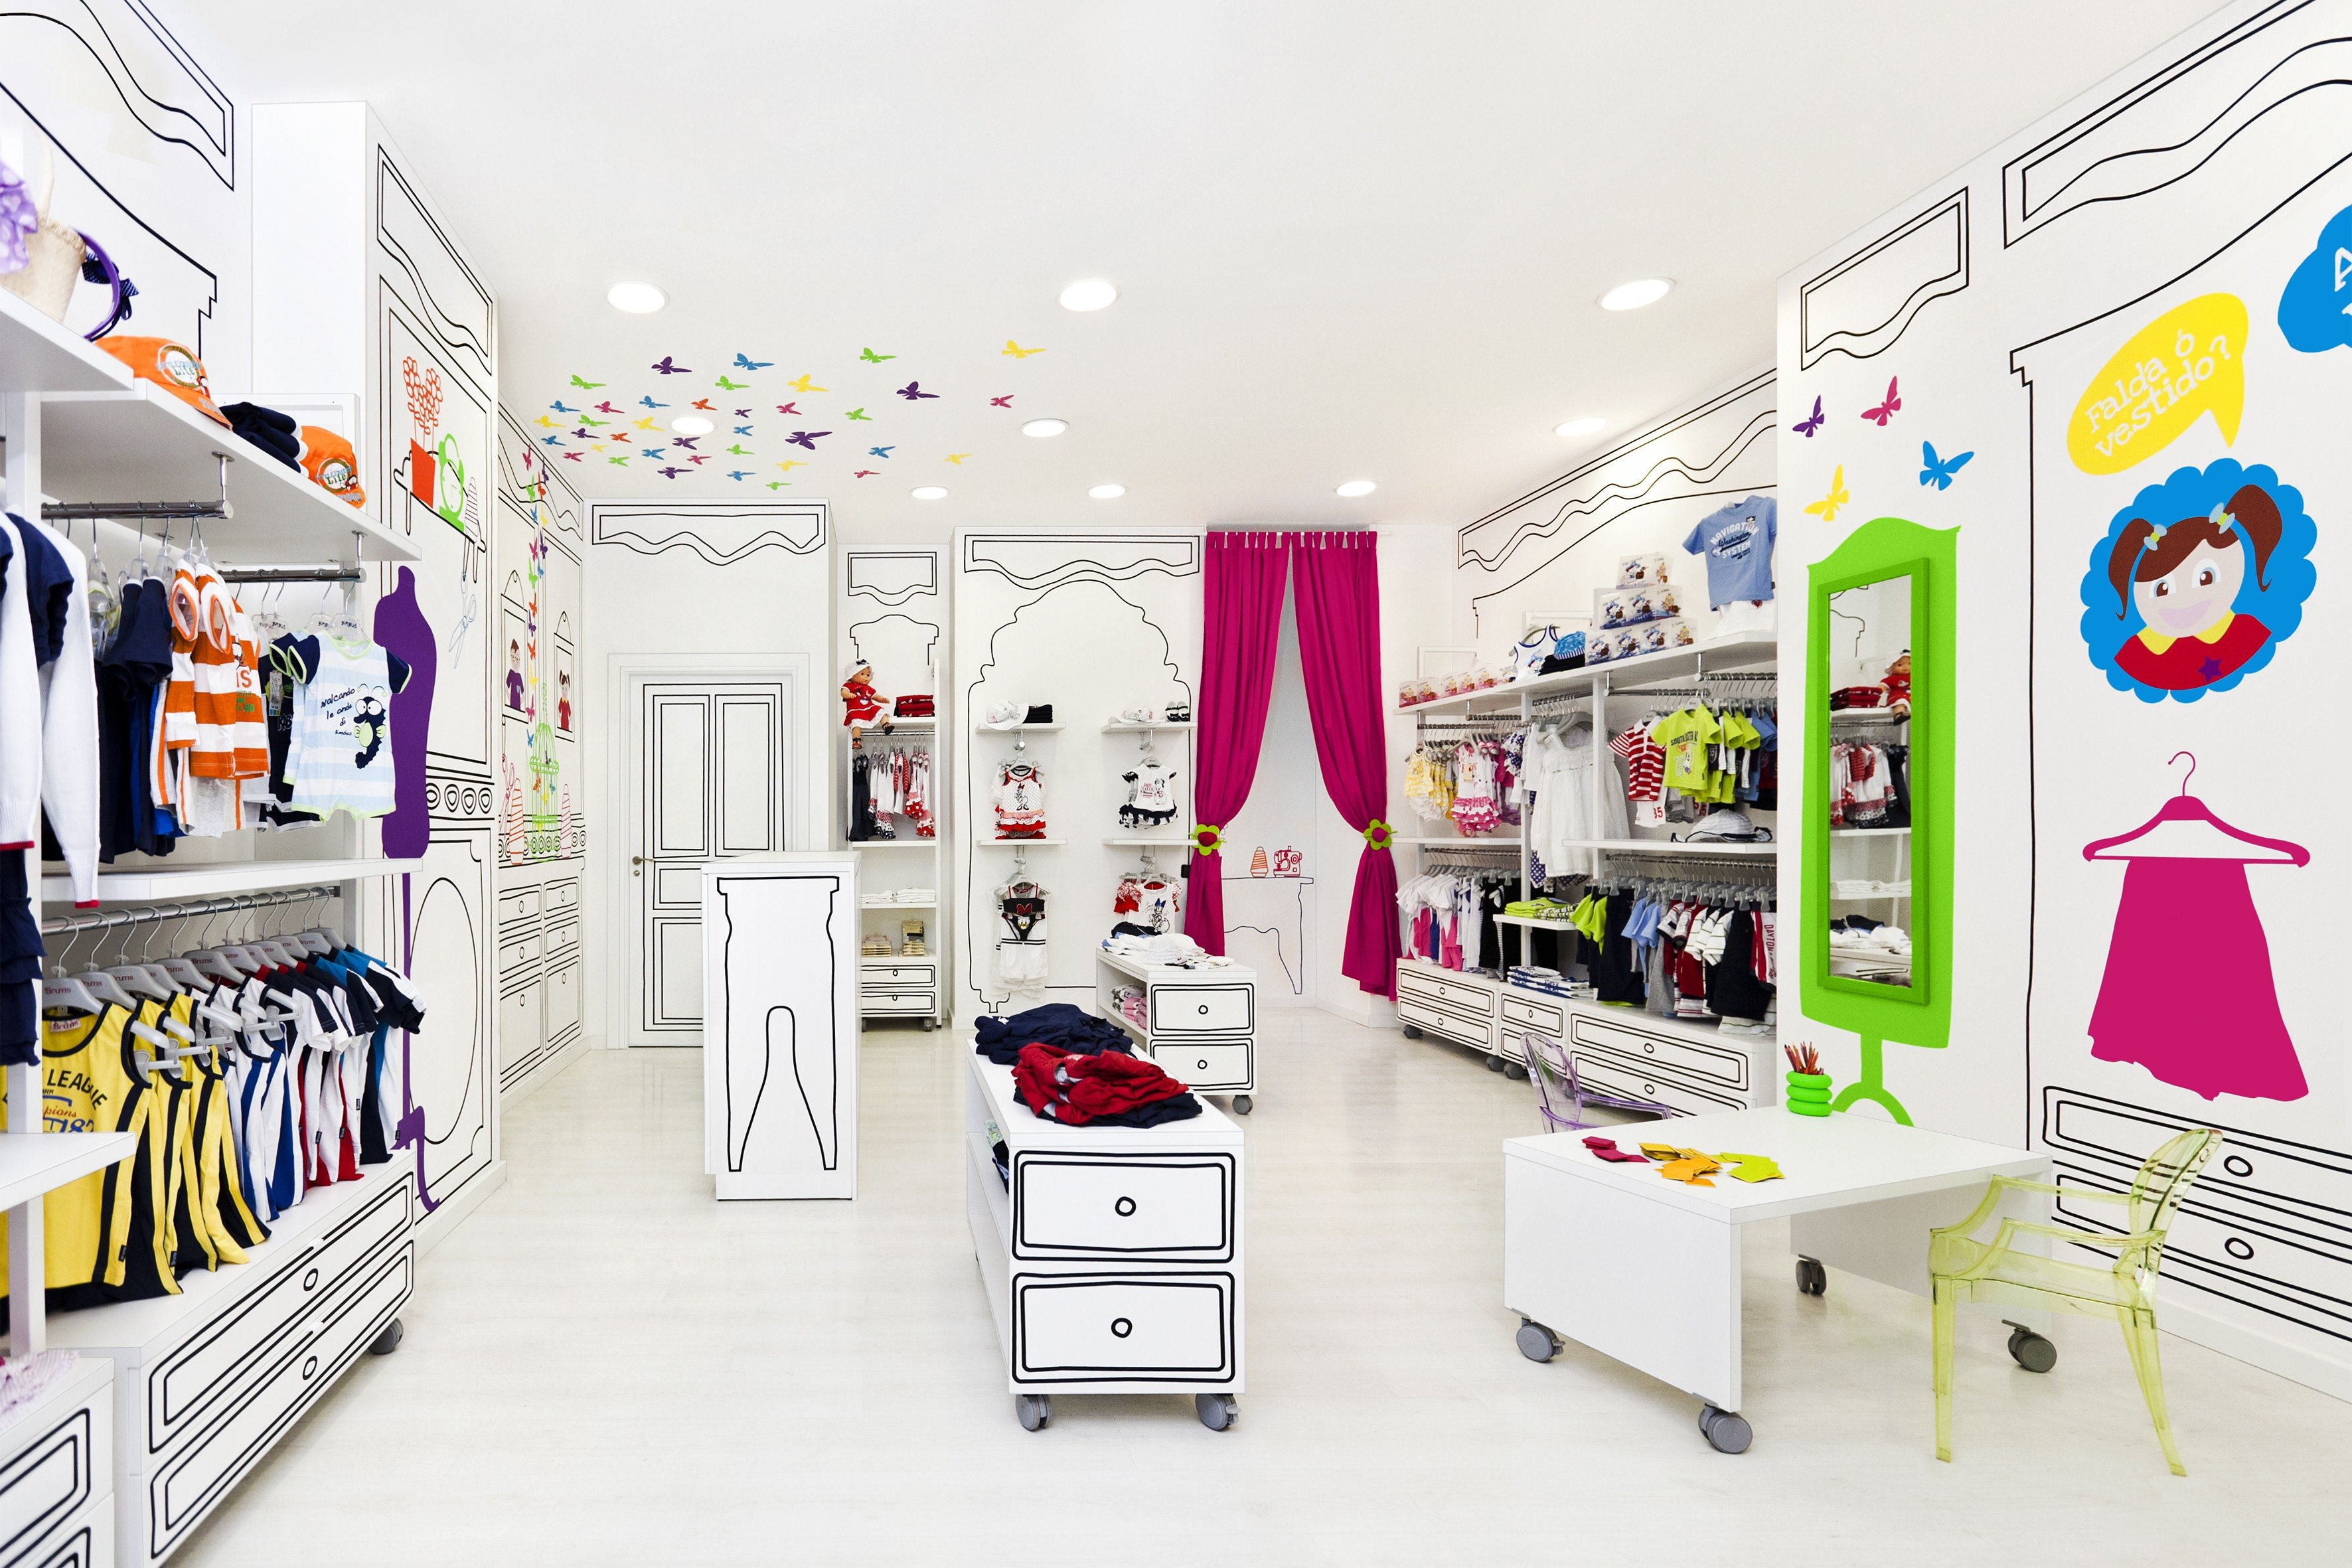 Дизайн проекты детских магазинов. Интерьер детского магазина. Магазин одежды для детей. Интерьер магазина детской одежды. Интерьер магазина одежды.